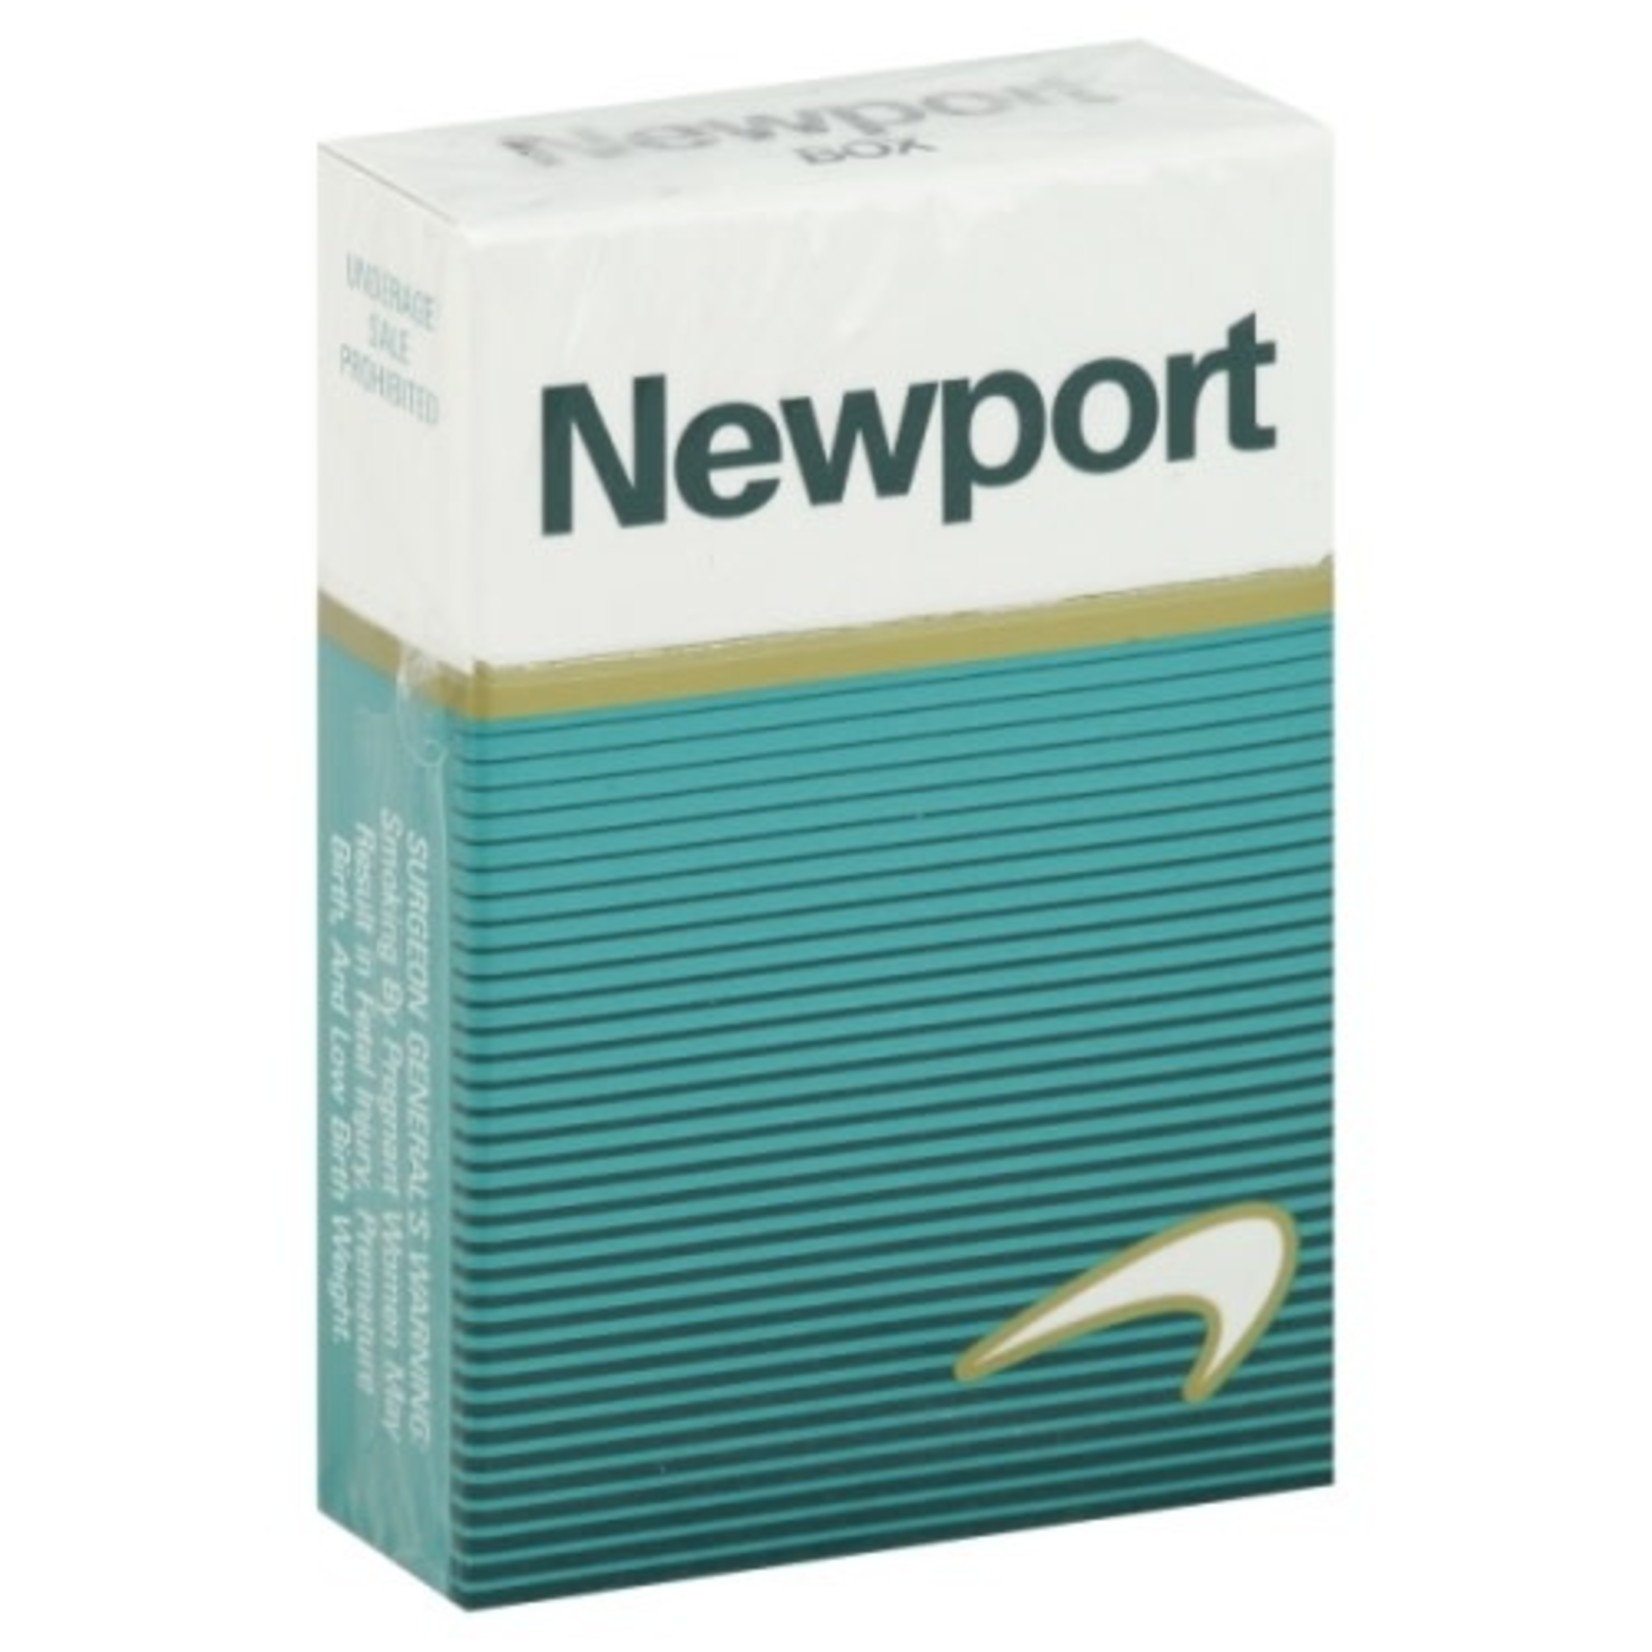 Newport Newport Box